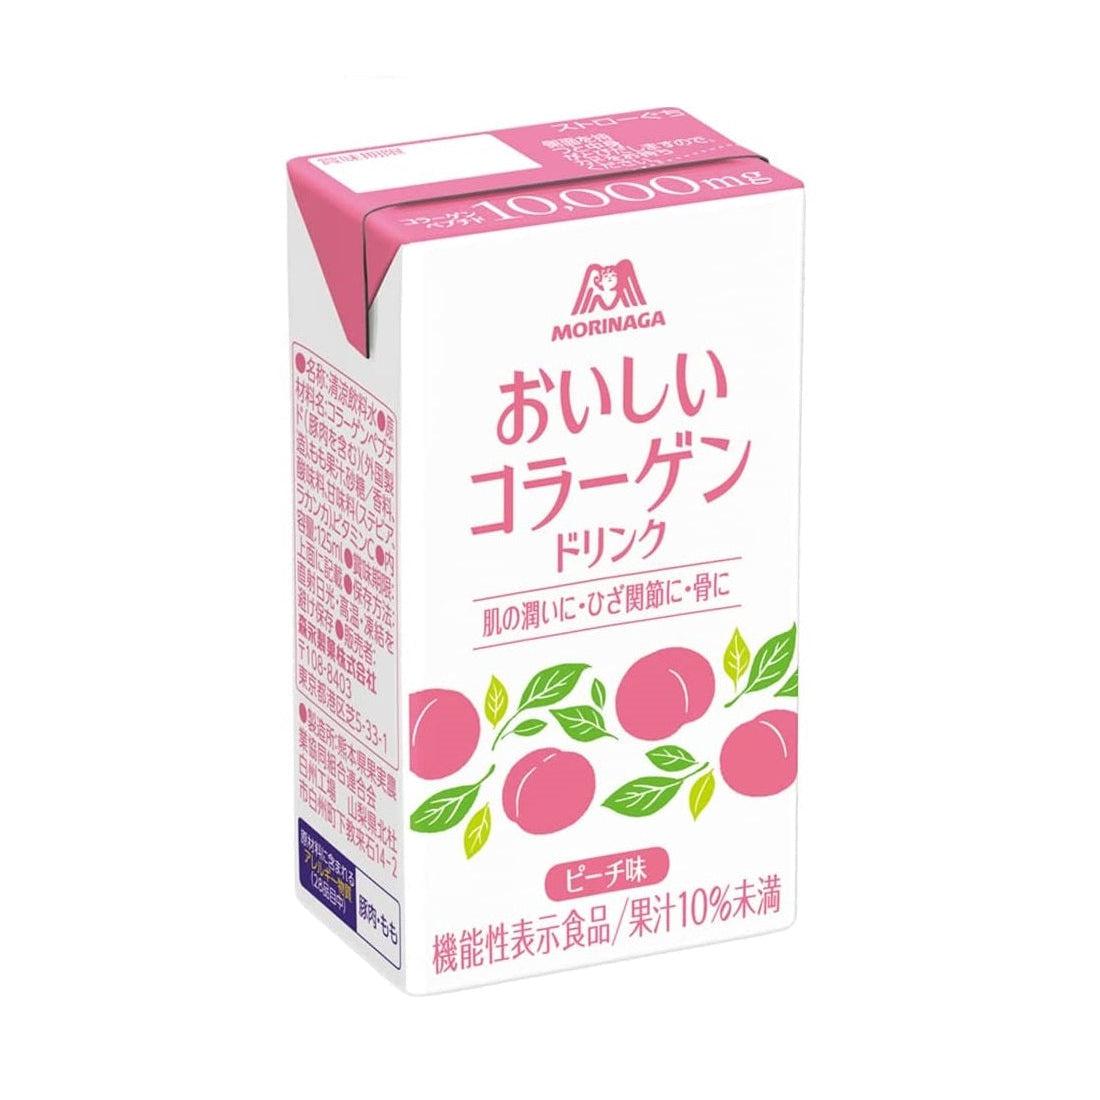 Morinaga Oishi Collagen Drink Peach Flavor 12 Cartons